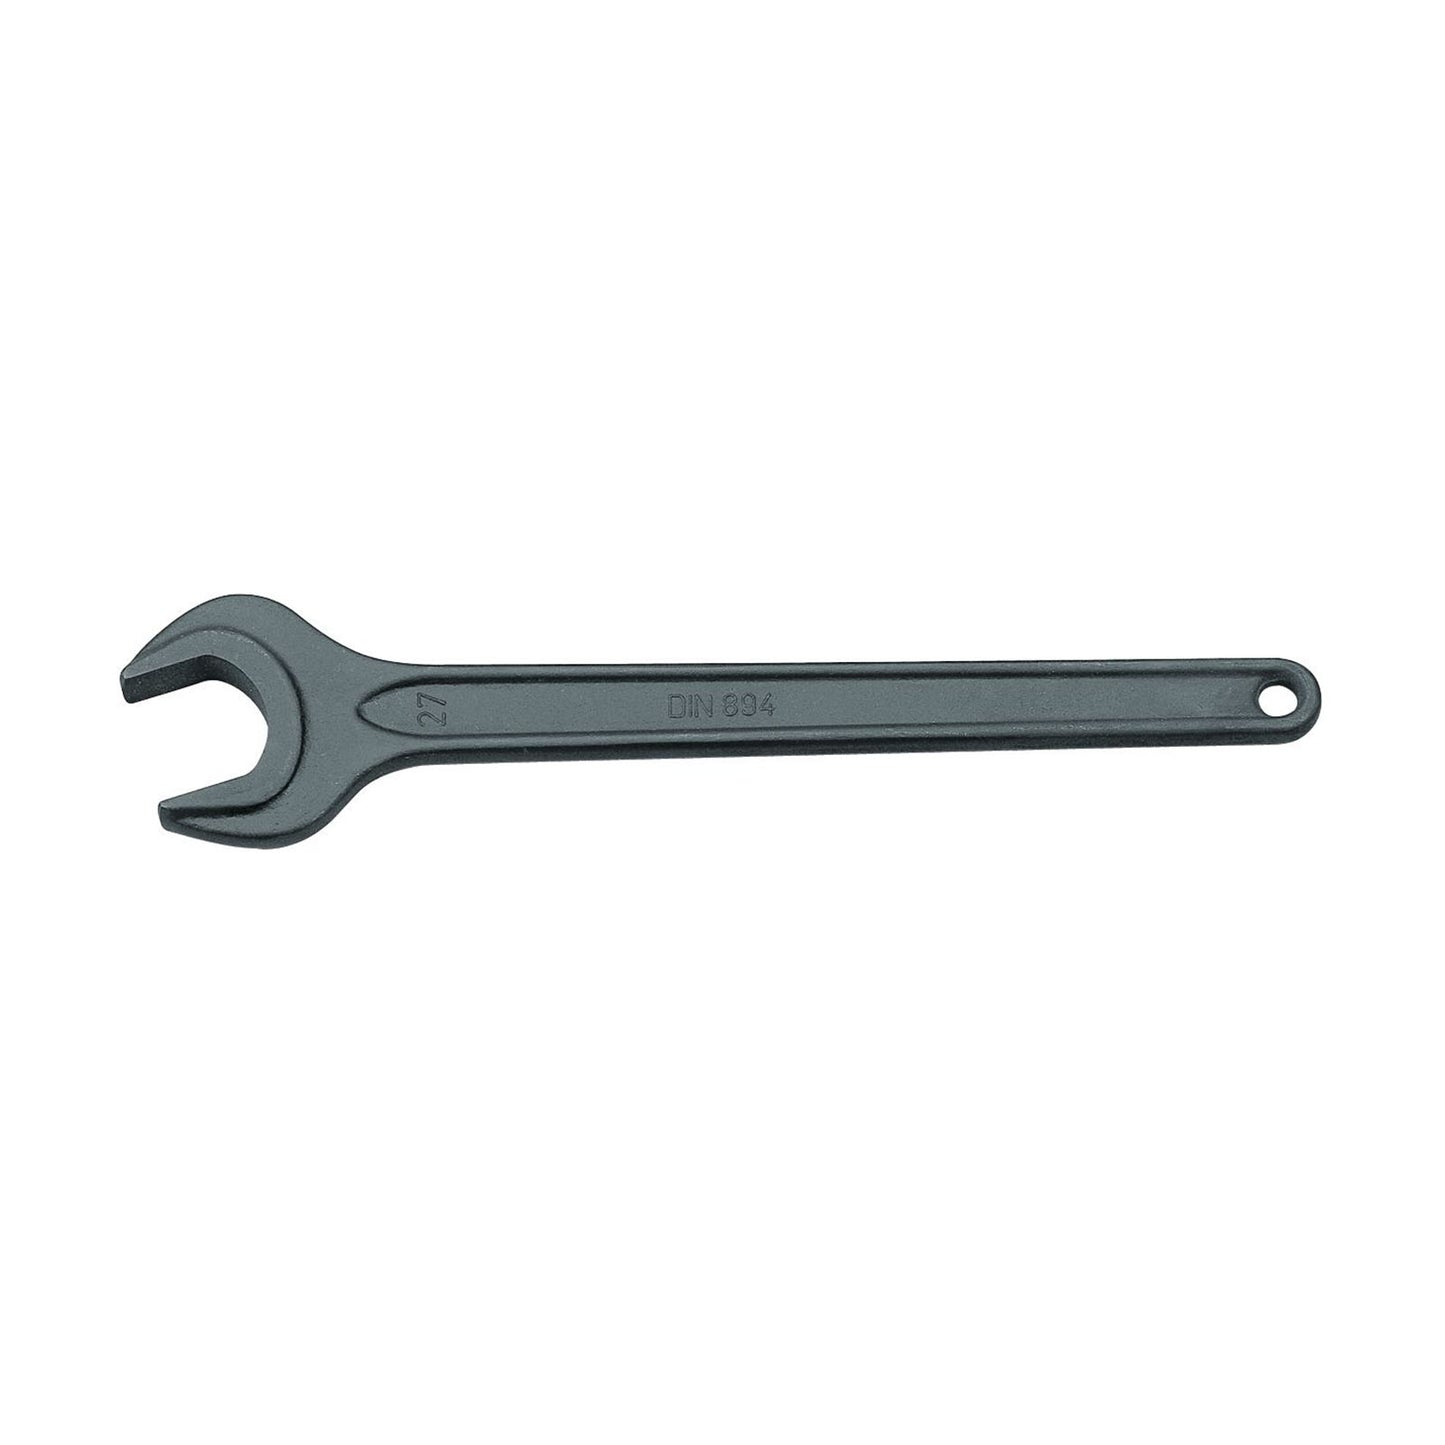 GEDORE 894 5/8AF - 1 Open End Wrench, 5/8AF (6580300)